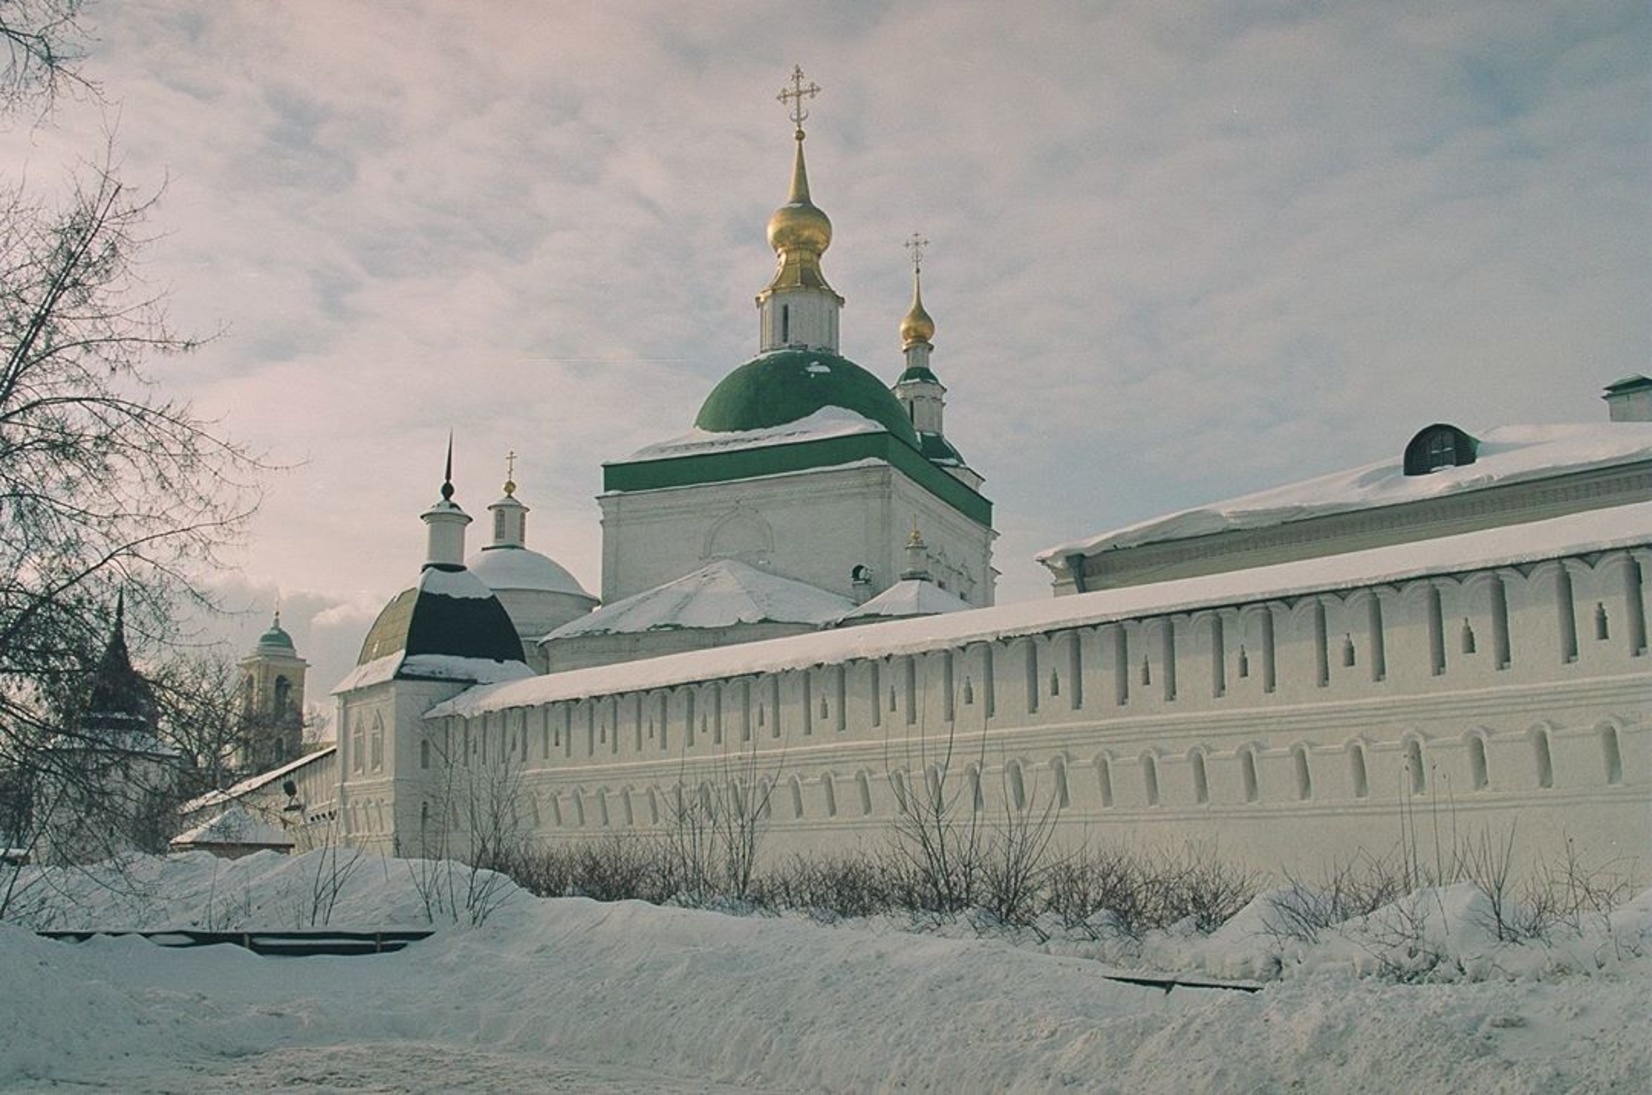 данилов монастырь в москве